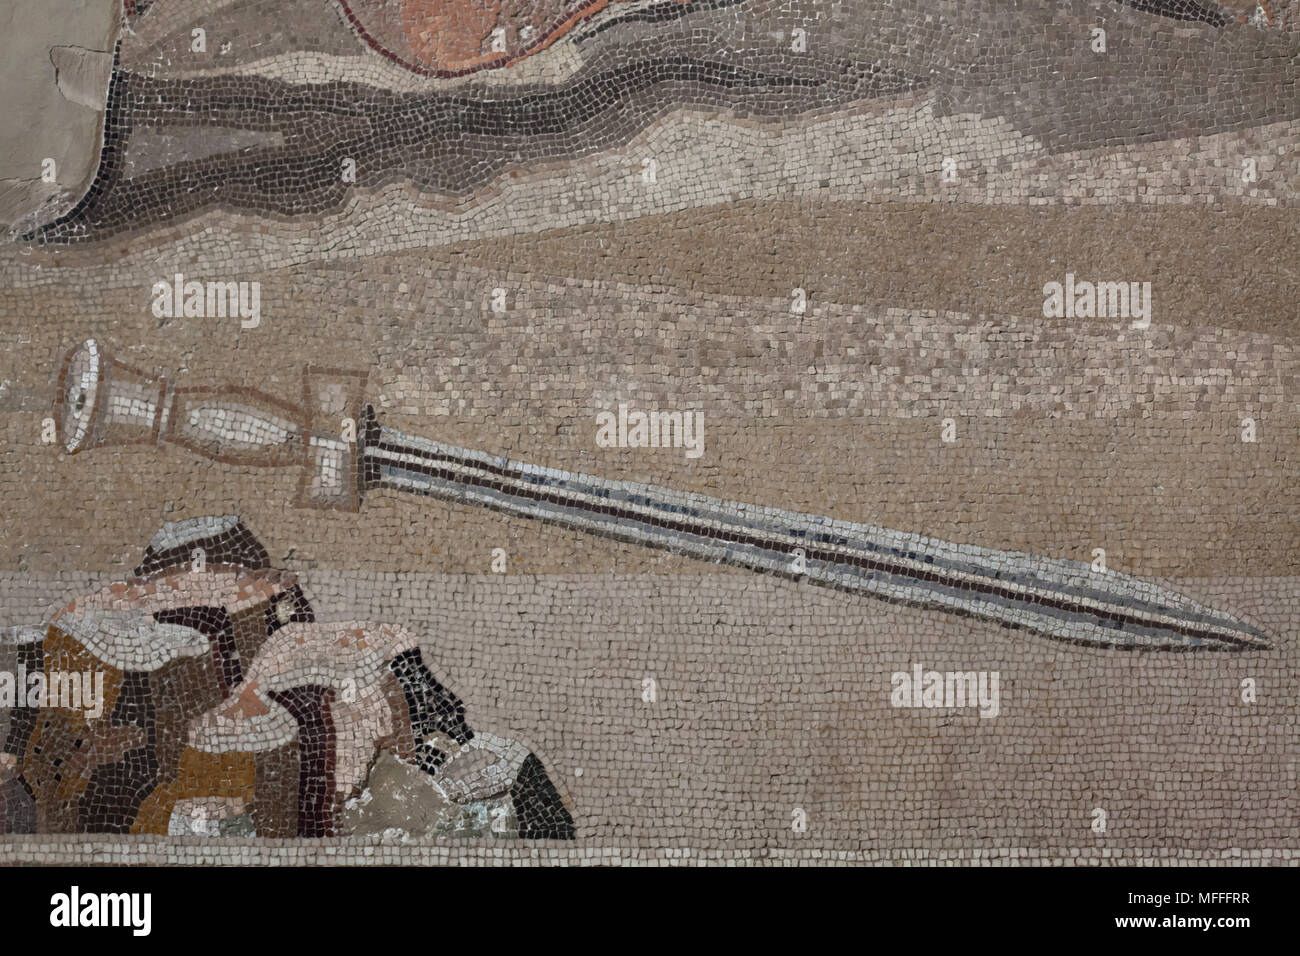 Spada persiana immagini e fotografie stock ad alta risoluzione - Alamy